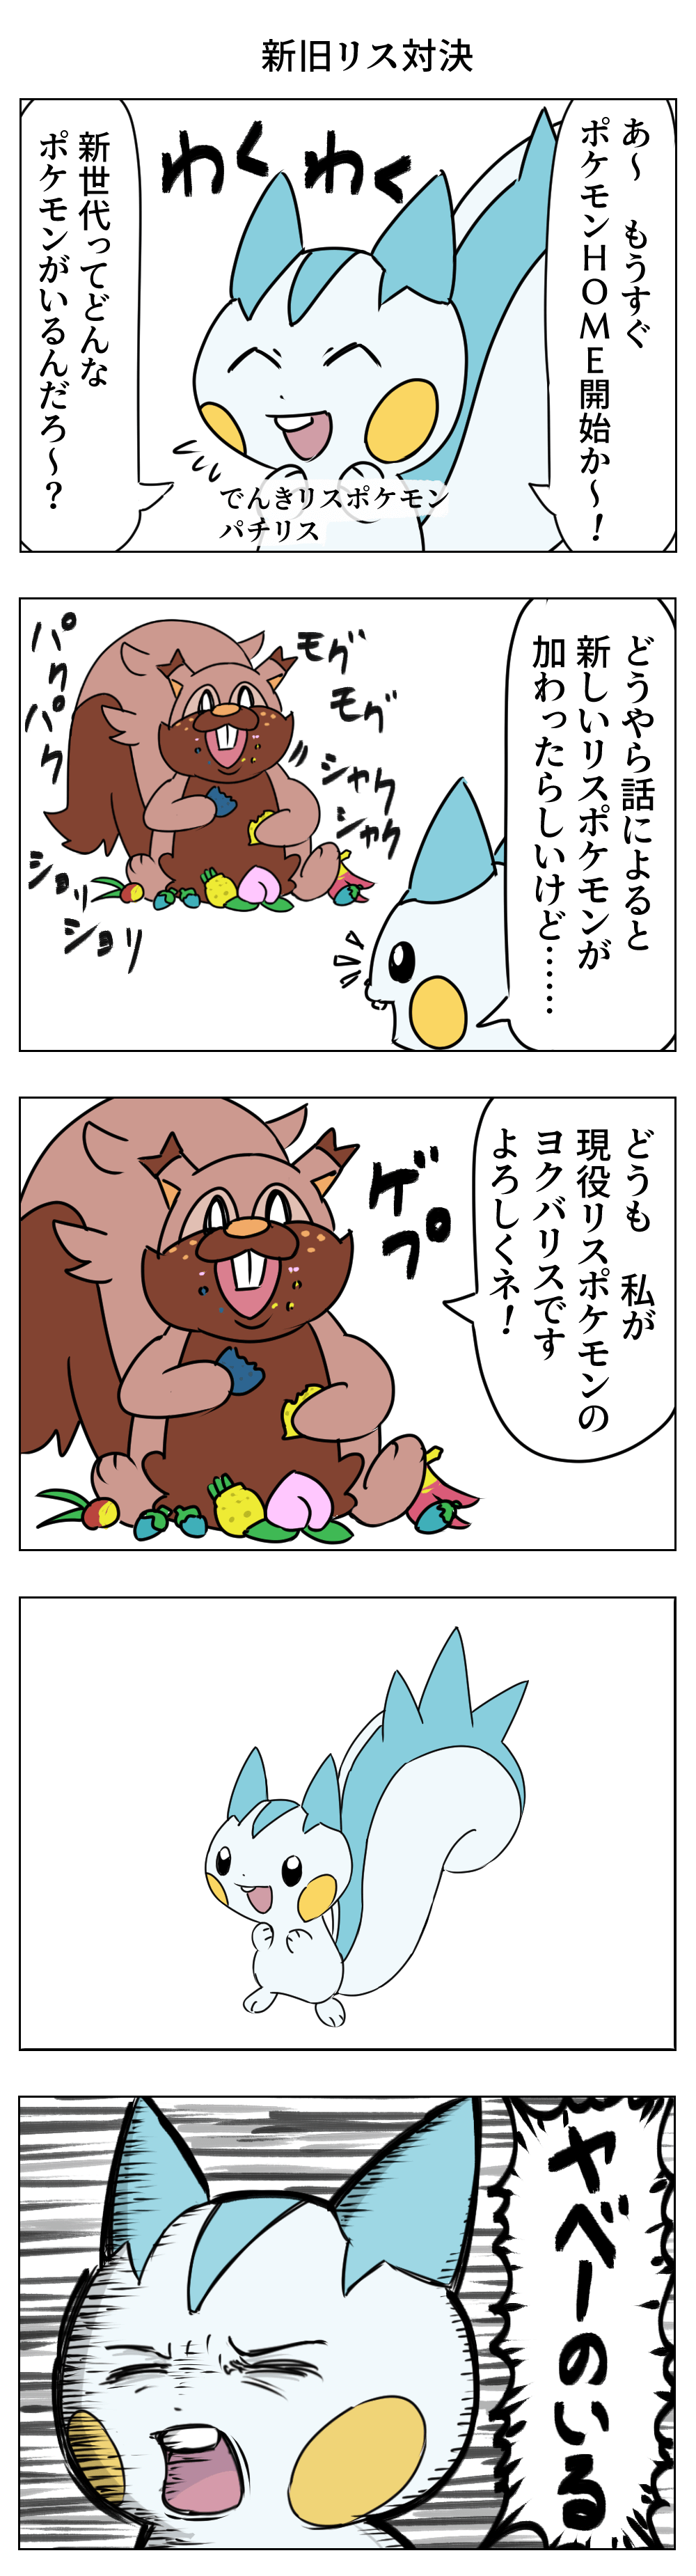 びっくりムーン ポケモンhomeの漫画 T Co R4dfpx6lig Twitter